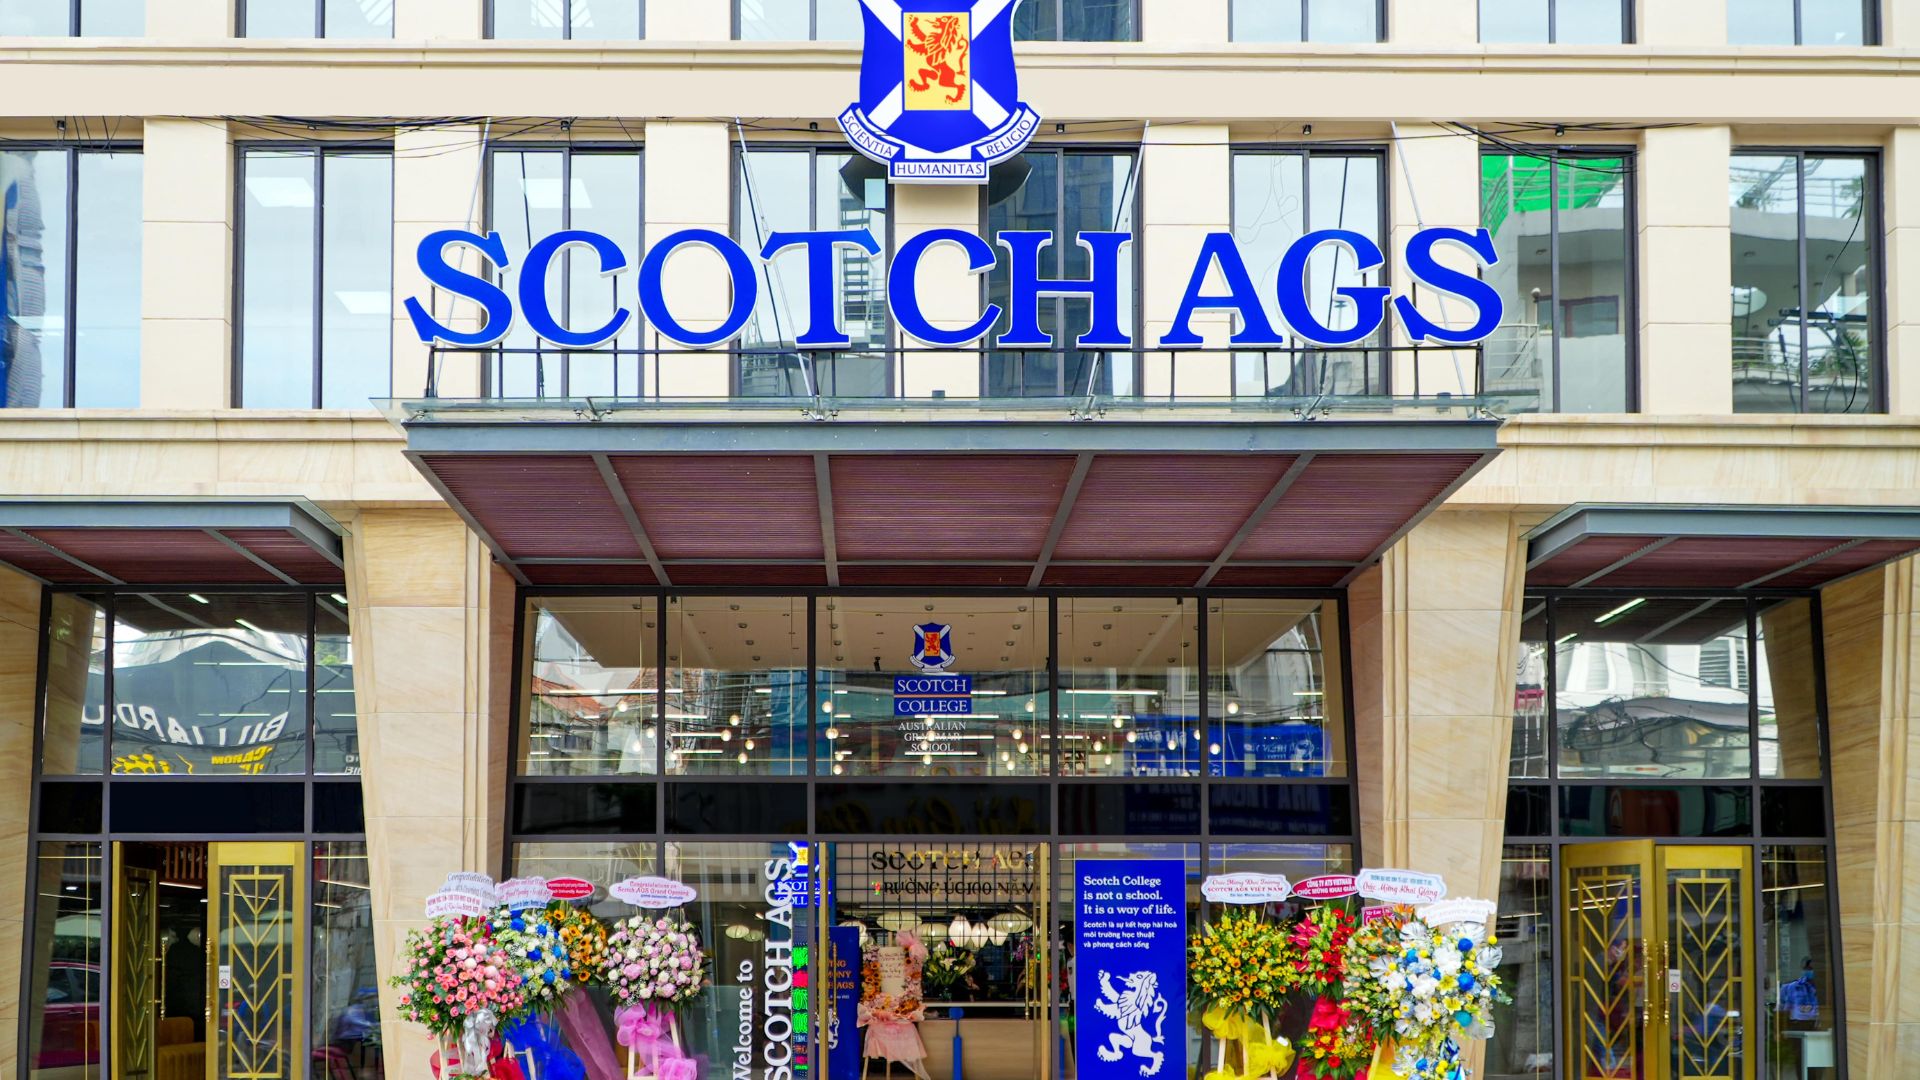 Scotch AGS Trung tâm Sài Gòn – Phú Nhuận